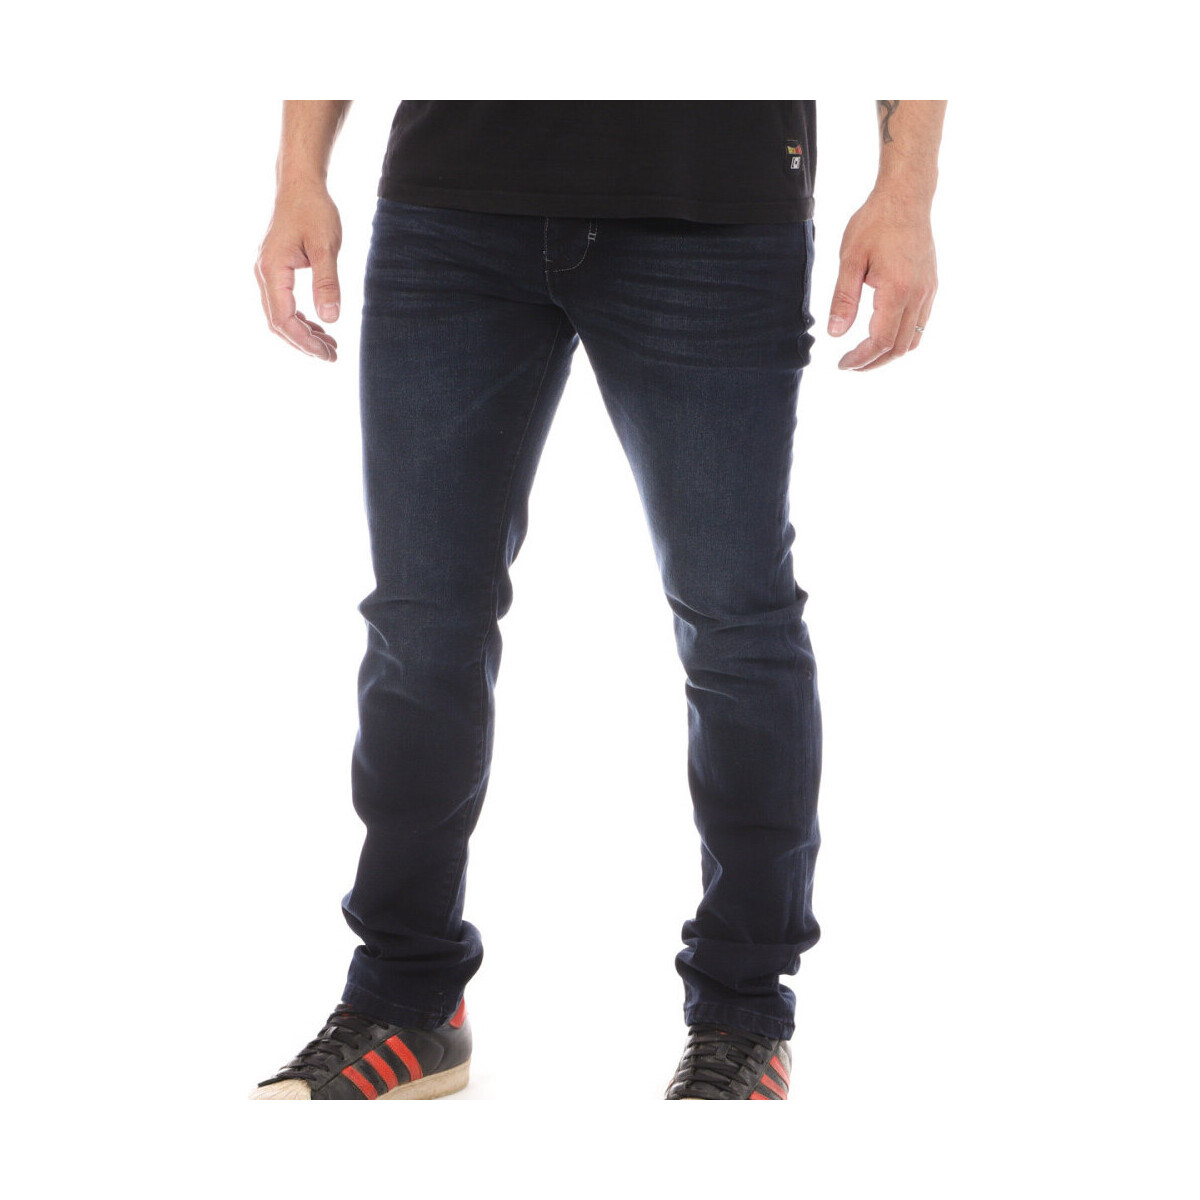 Textil Homem Calças Jeans Rms 26  Azul